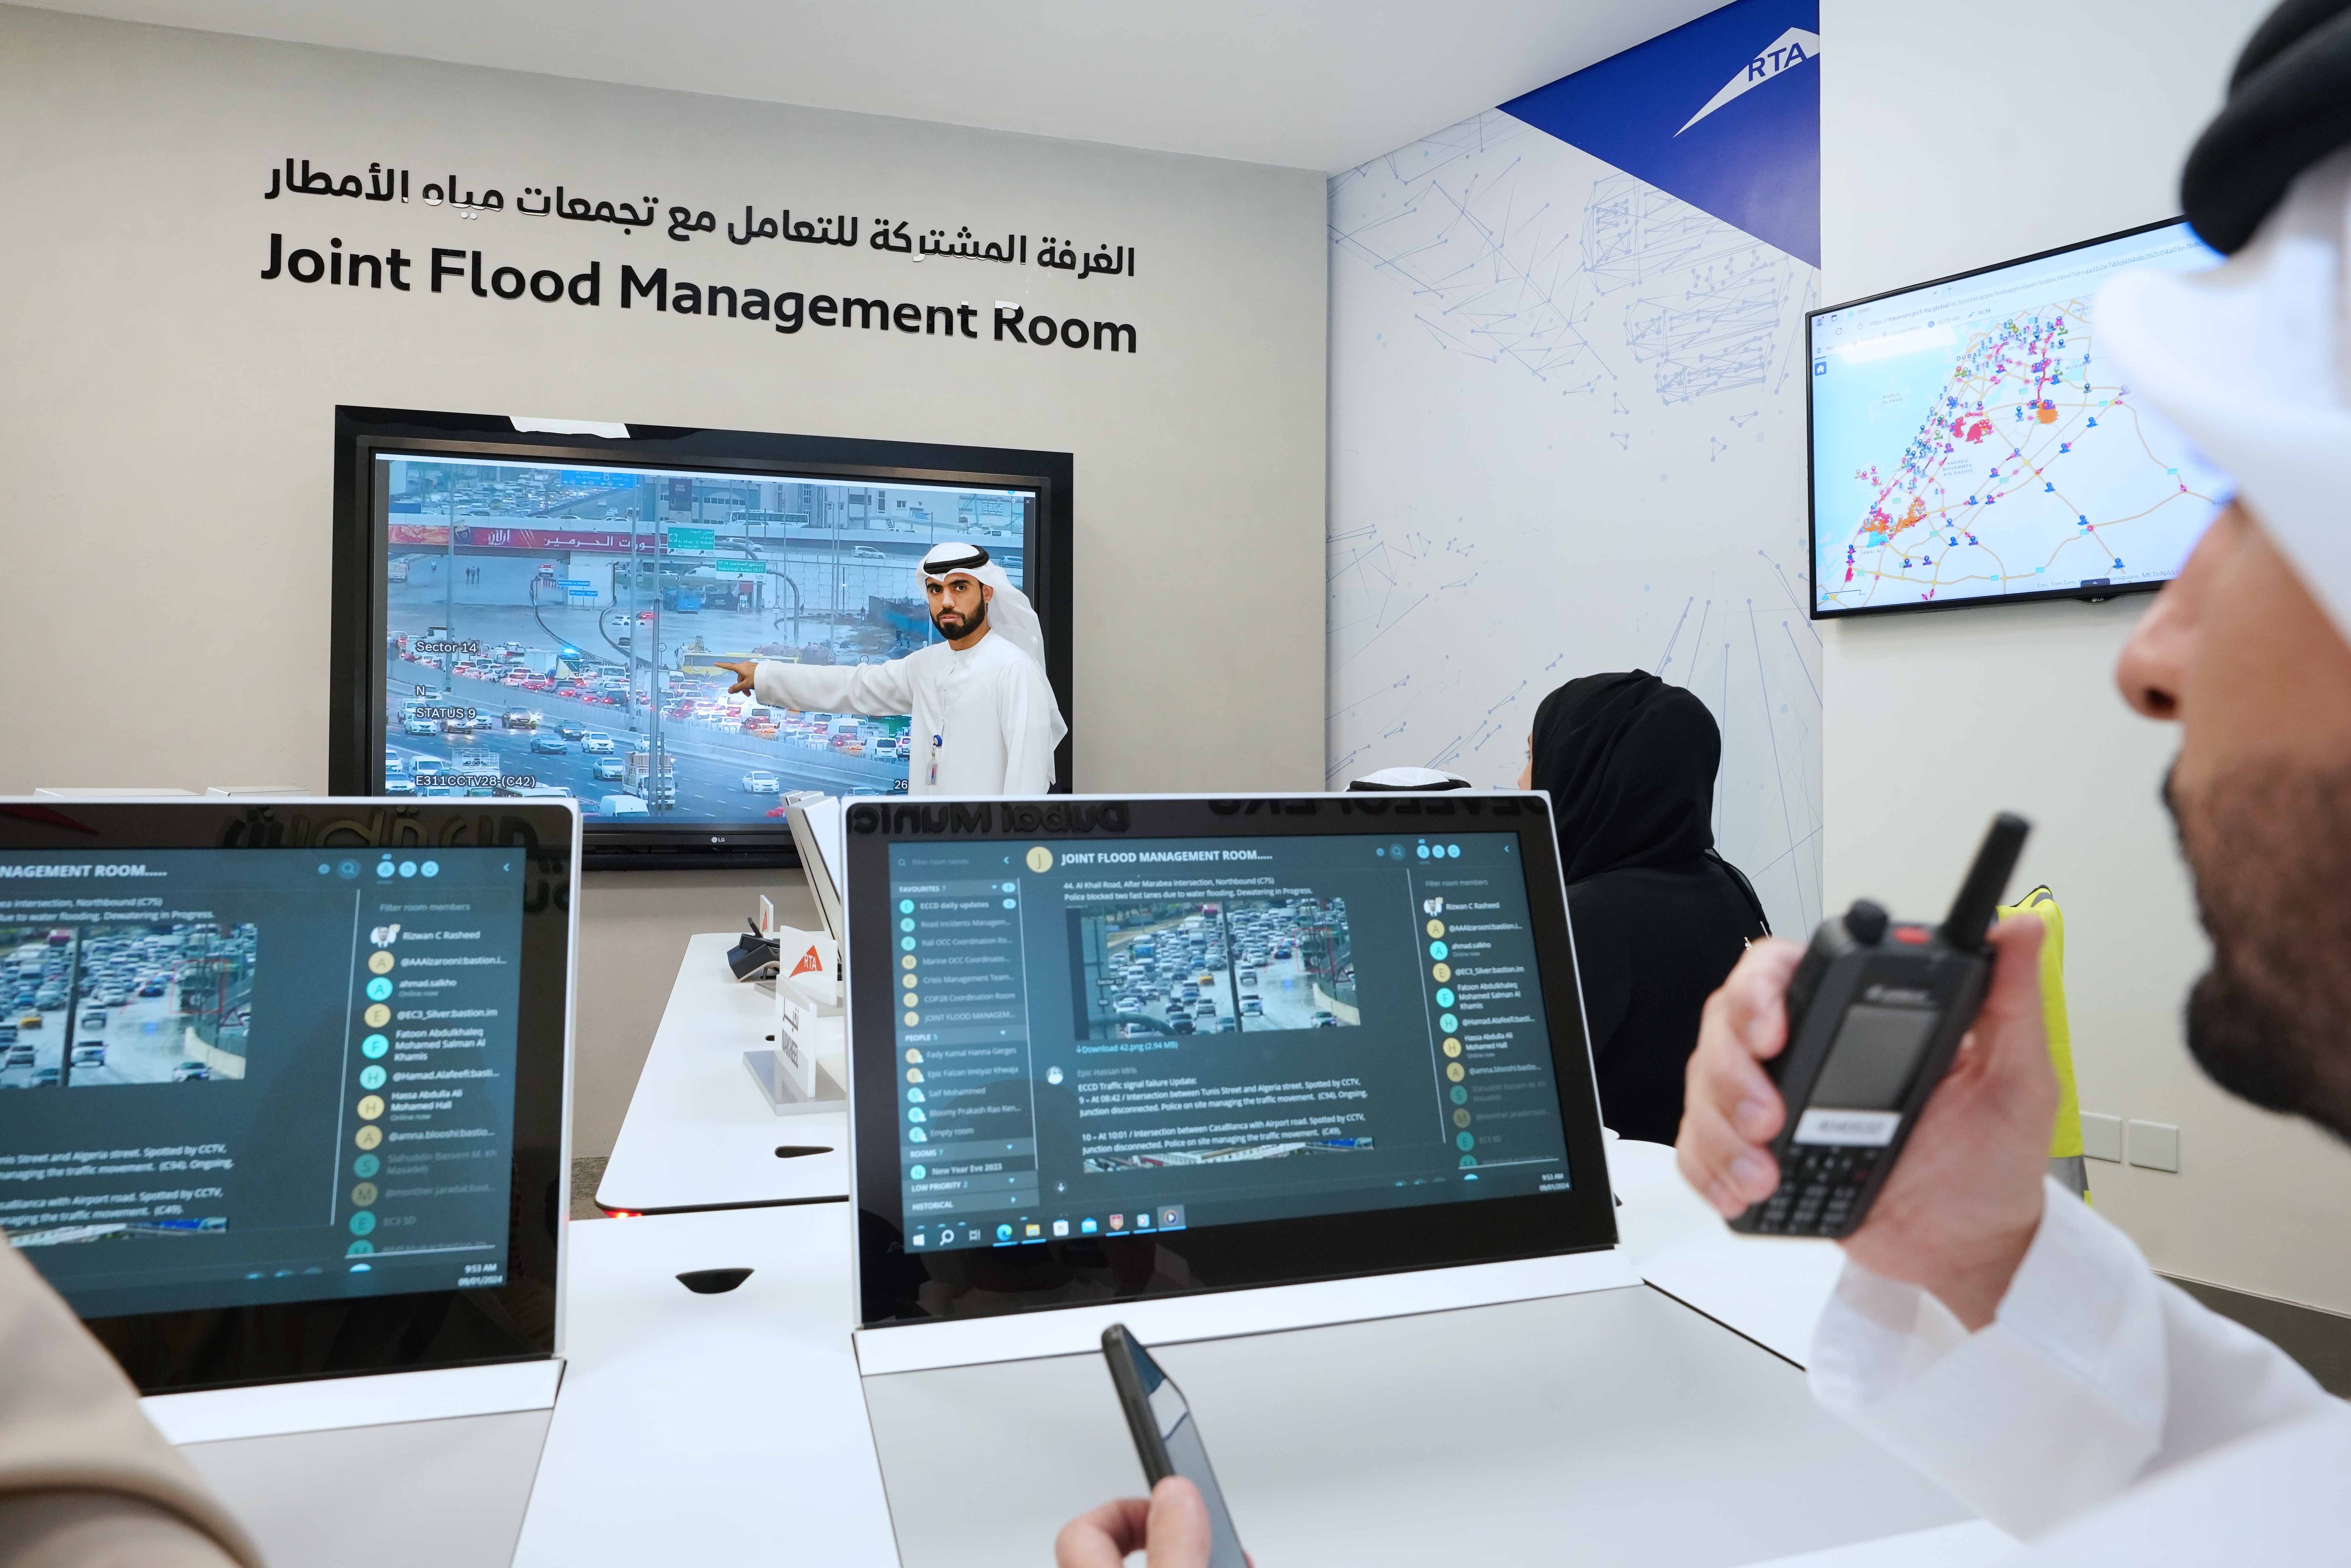 "طرق دبي" تدشن الغرفة المشتركة للتعامل مع تجمعات مياه الأمطار